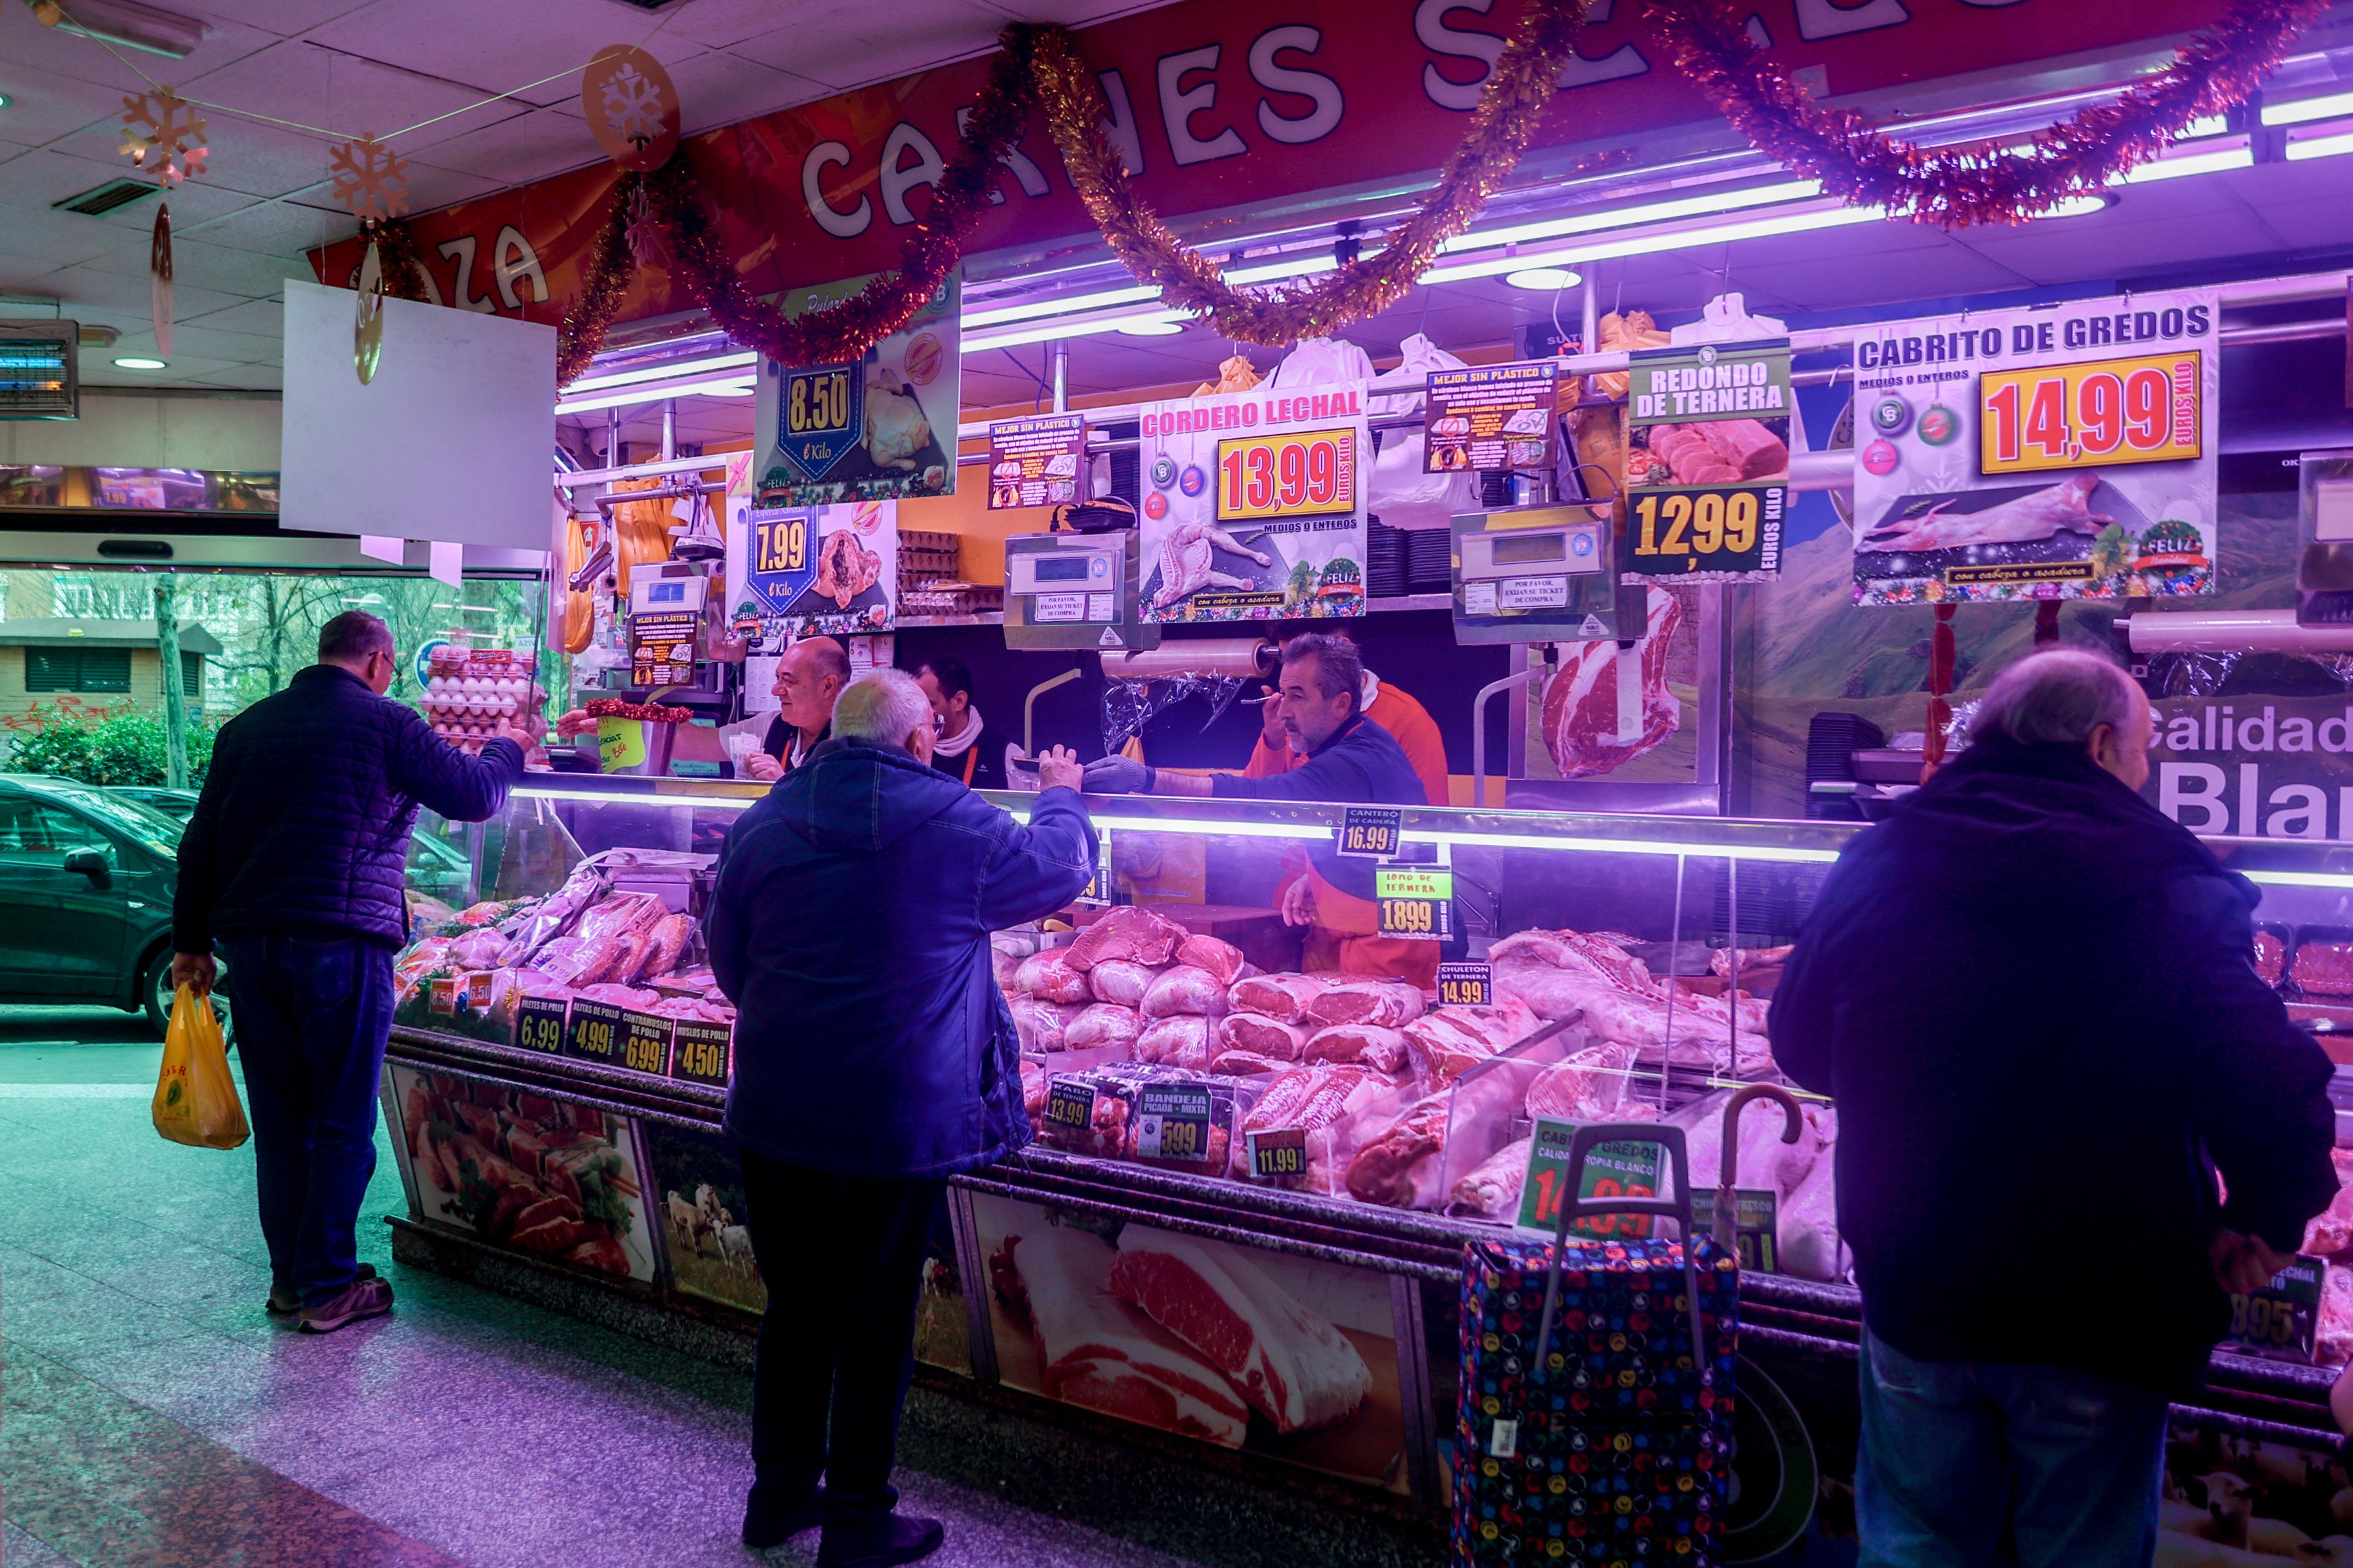 El 93% de los españoles apoya intervenir los precios de los alimentos, según un sondeo